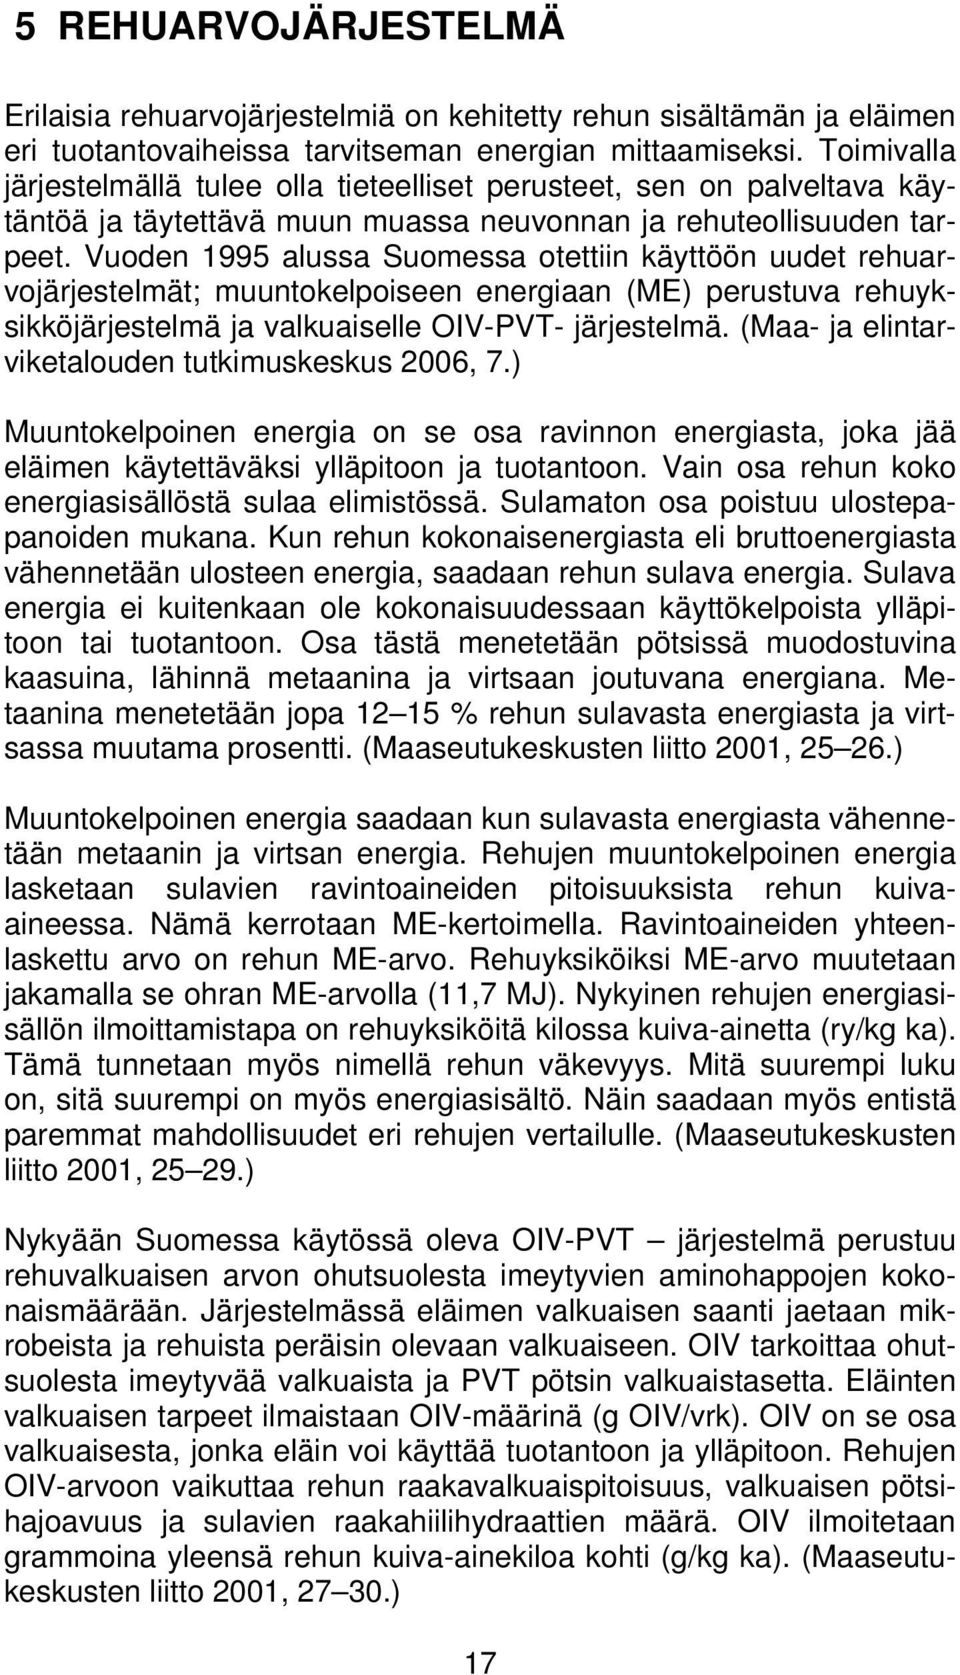 Vuoden 1995 alussa Suomessa otettiin käyttöön uudet rehuarvojärjestelmät; muuntokelpoiseen energiaan (ME) perustuva rehuyksikköjärjestelmä ja valkuaiselle OIV-PVT- järjestelmä.